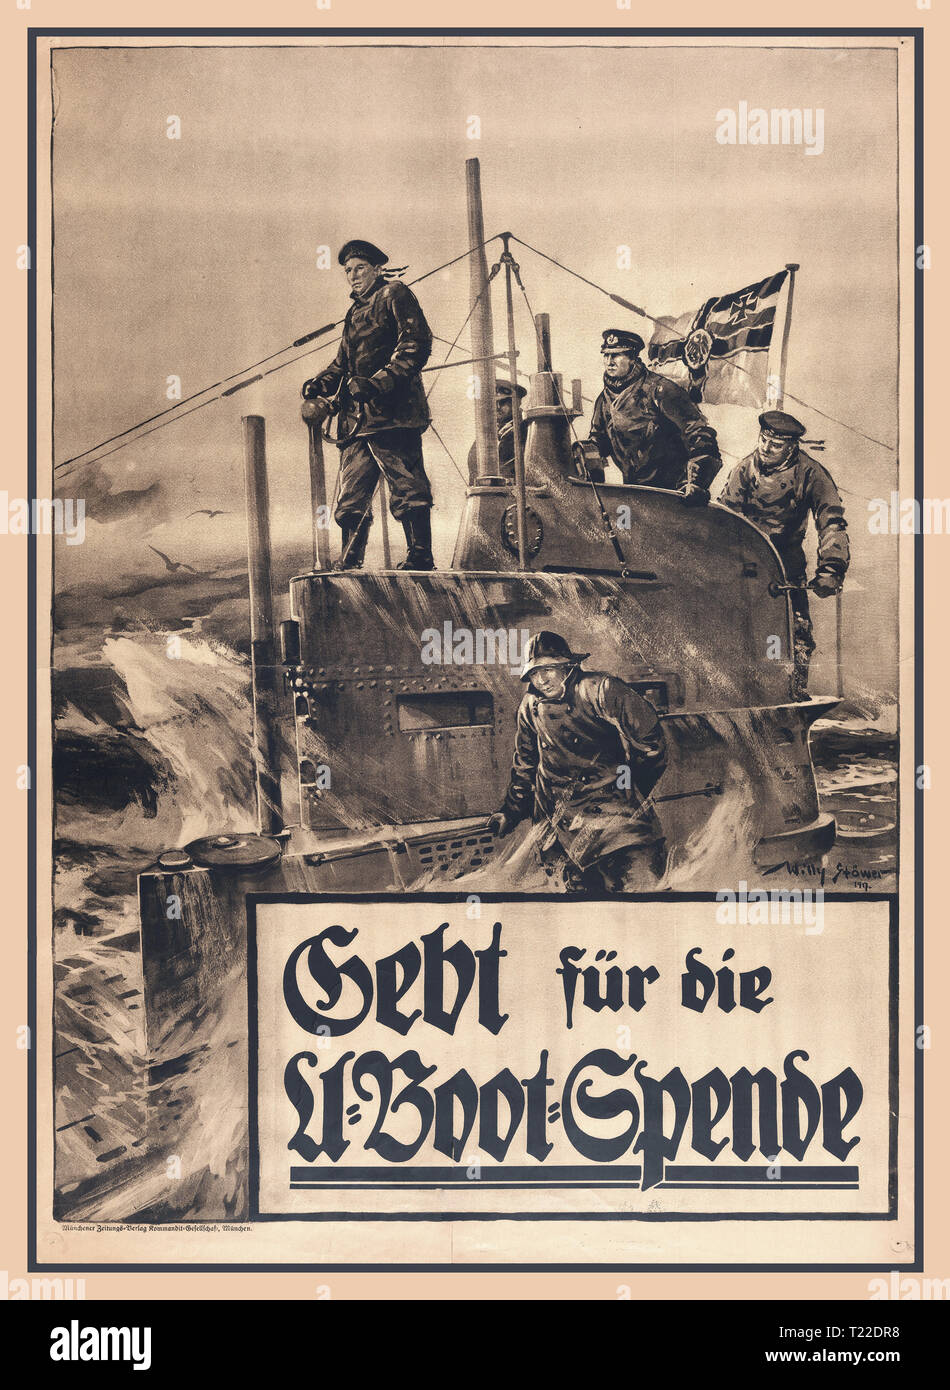 Vintage WW1 alemán póster para appeall para donaciones de dinero de los fondos submarinos para 1917 por el pintor marino alemán Willy Stöwer. La propaganda de guerra de la Marina de submarinos U-Boat de Primera Guerra Mundial, Alemania DAR AL submarino donación El conning tower surgió de un U-Boat, con cinco tripulantes a bordo. Un ensign naval alemana vuela desde la torre. "Gebt für die U-Boot' Spende Bak und Garleb G. m. b. H., Berlín [dar a la U-Boat colección.] Foto de stock